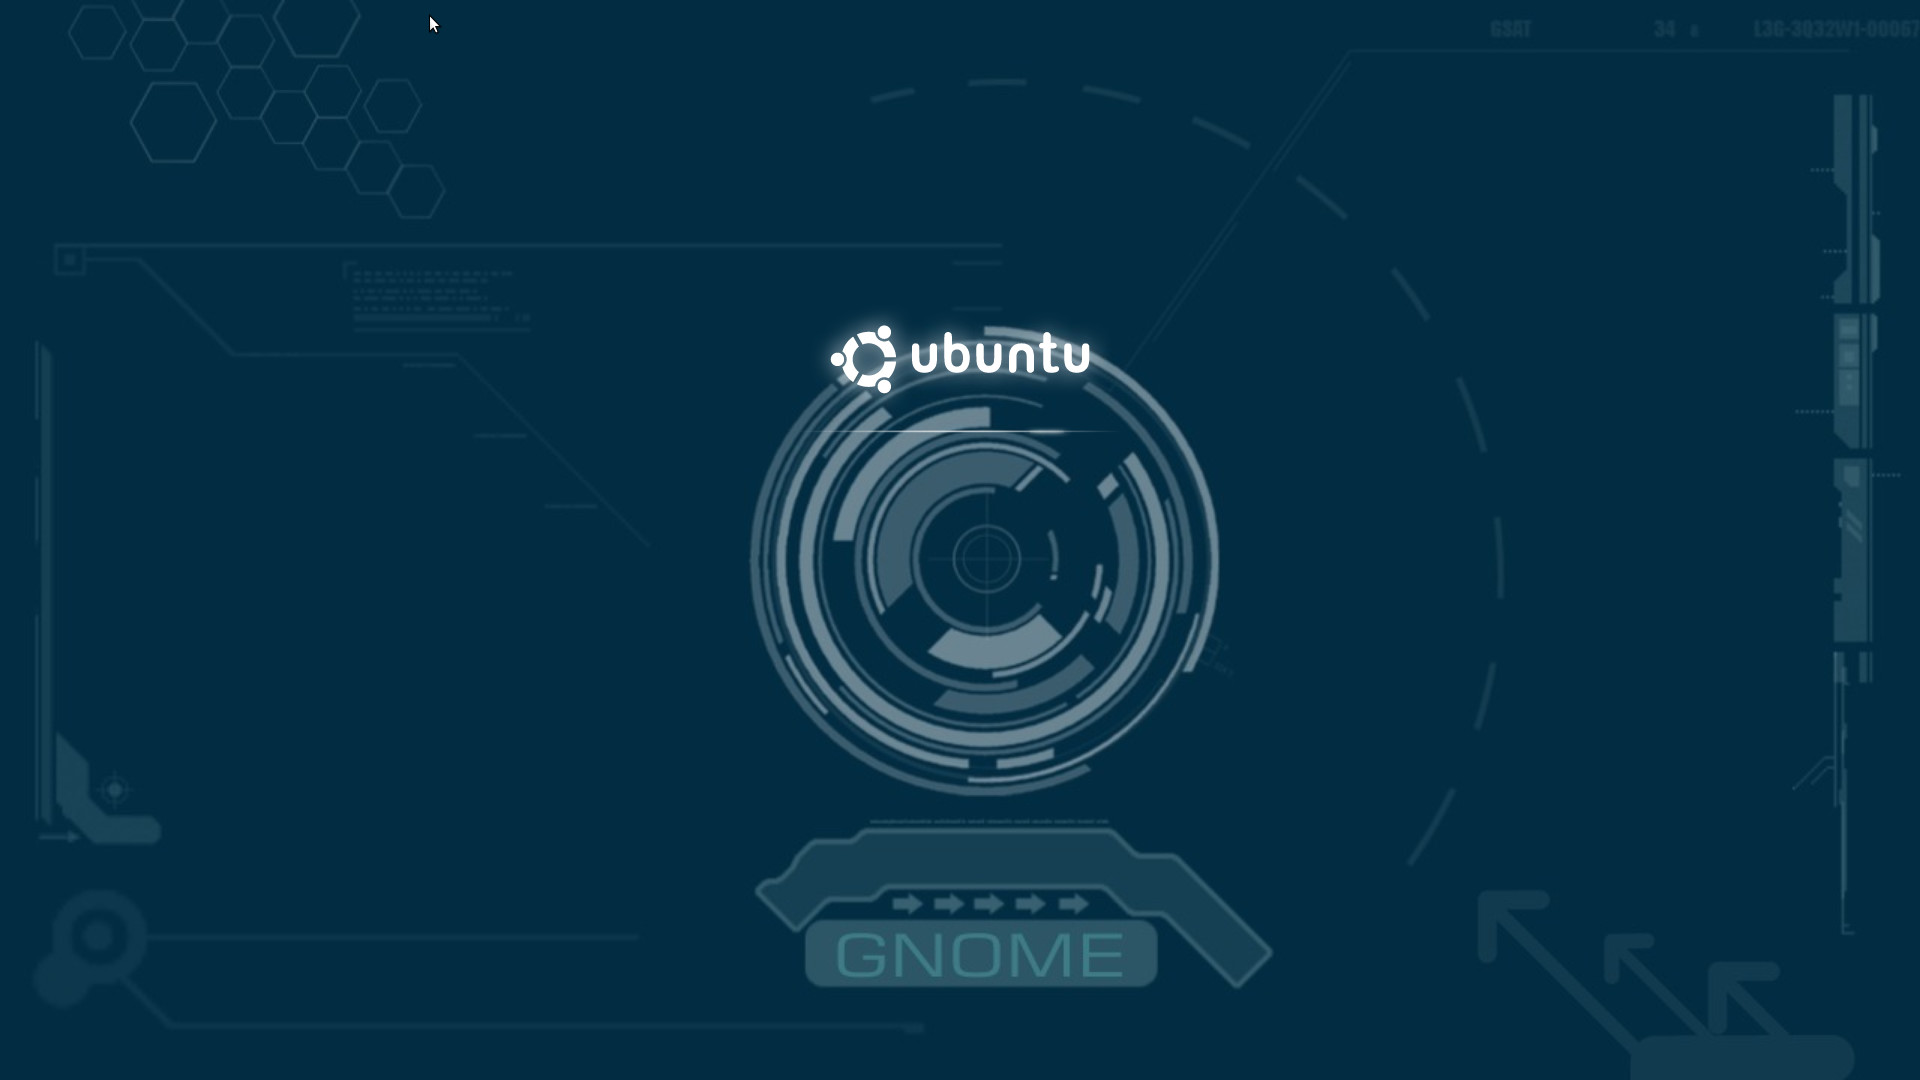 ubuntu fondo de pantalla,texto,fuente,circulo,gráficos,diseño gráfico